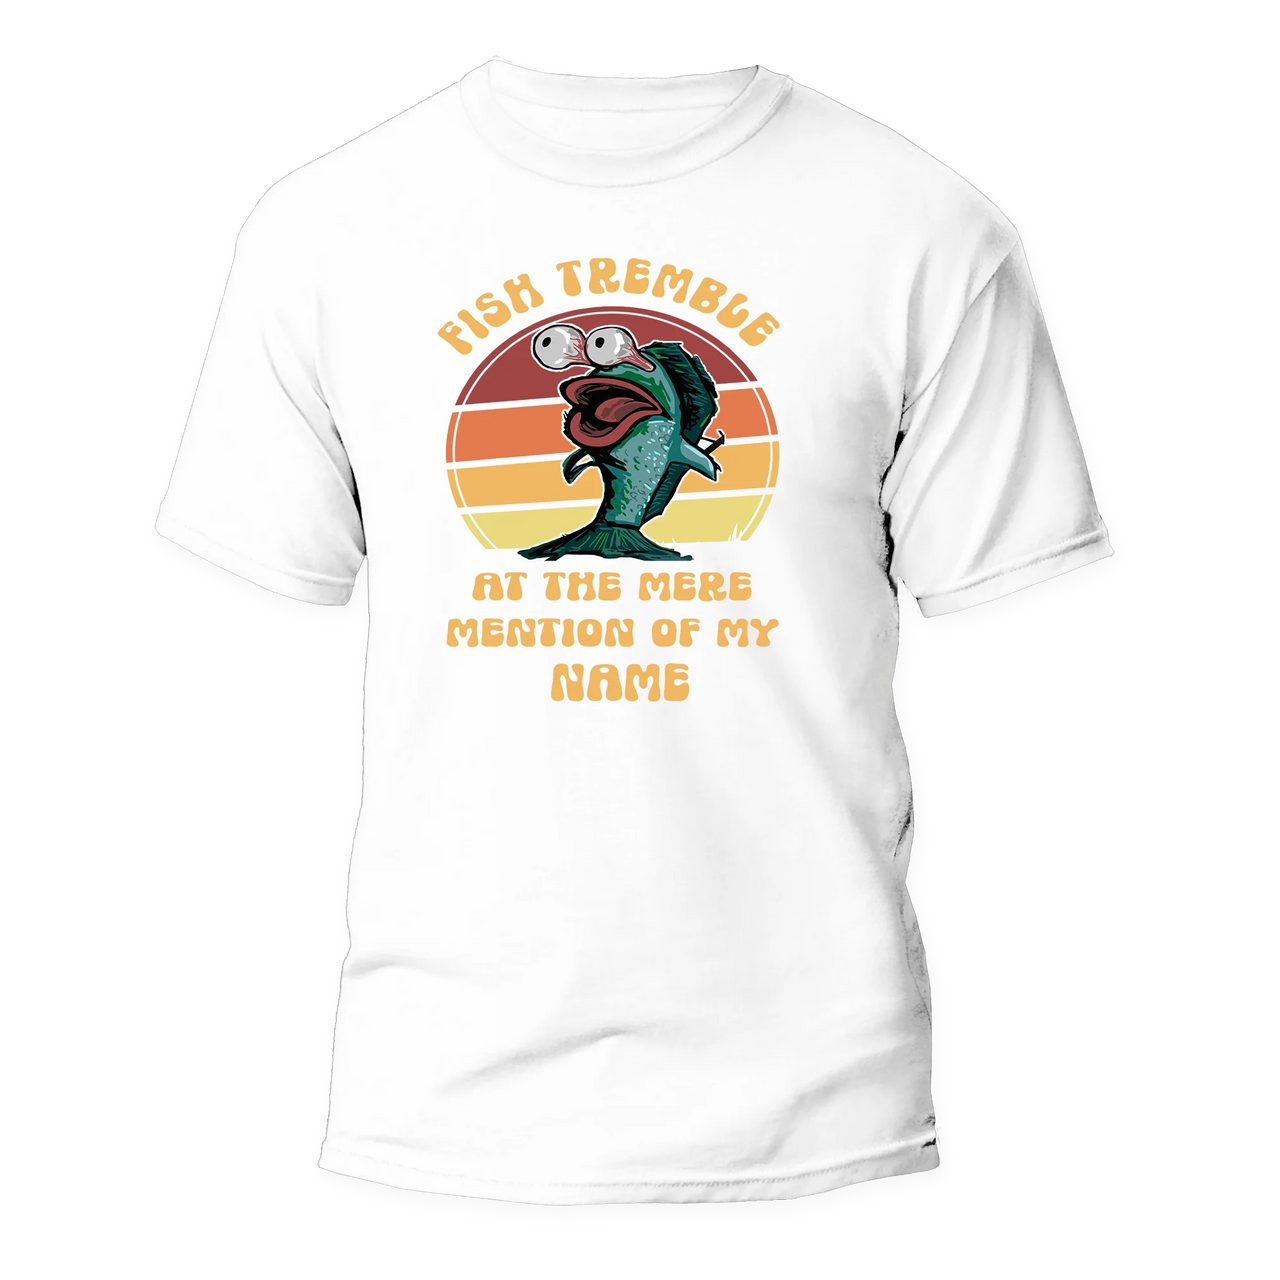 Fish Tremble Man T-Shirt